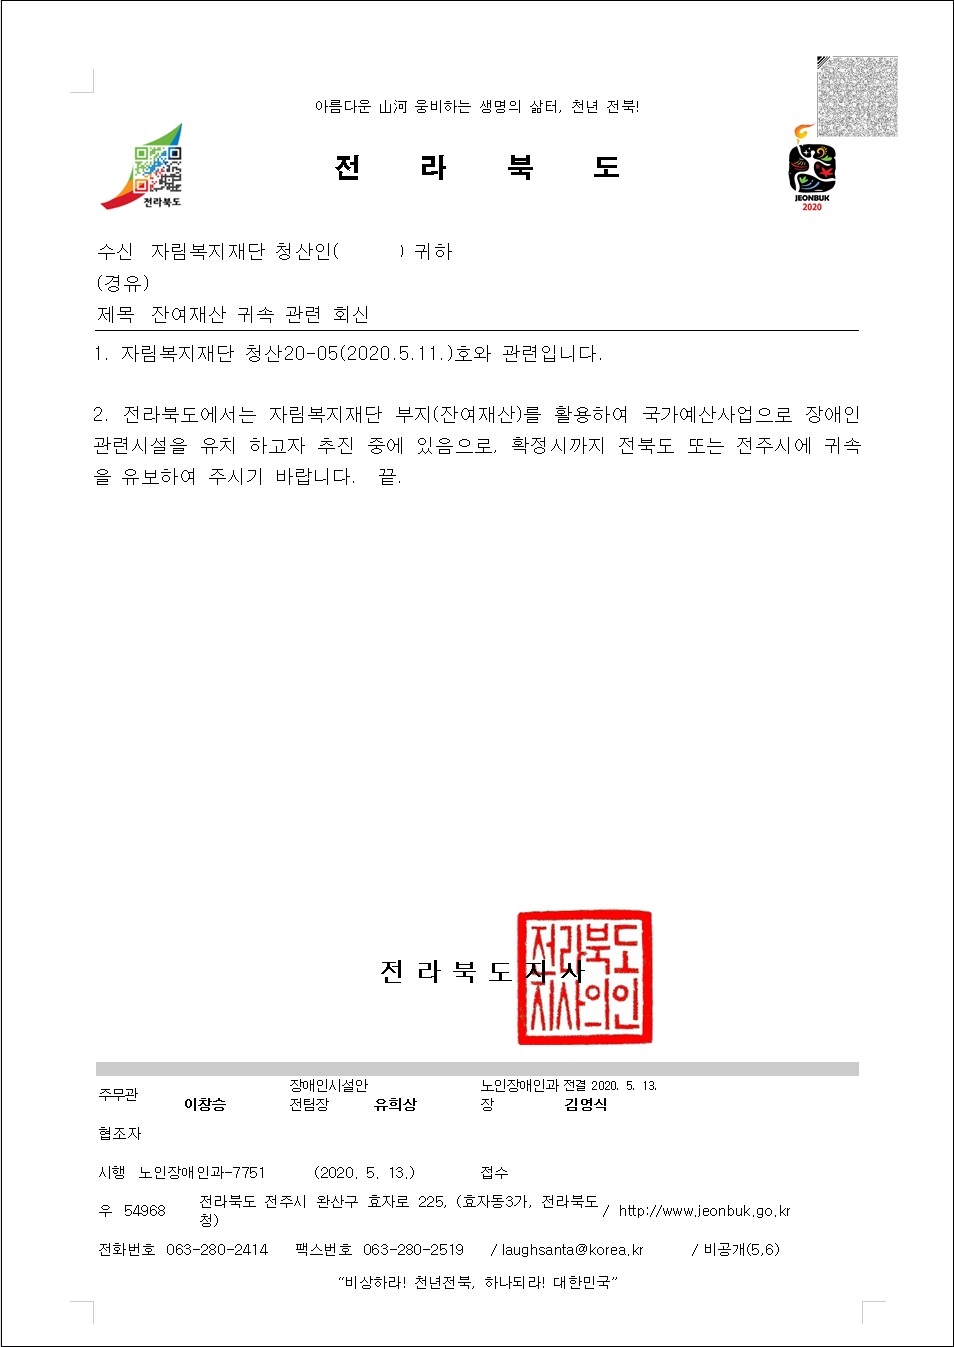 전북도 장애인복지과-7751(2020.05.13)호_자림복지재단 잔여재산 귀속 관련 회신.jpg